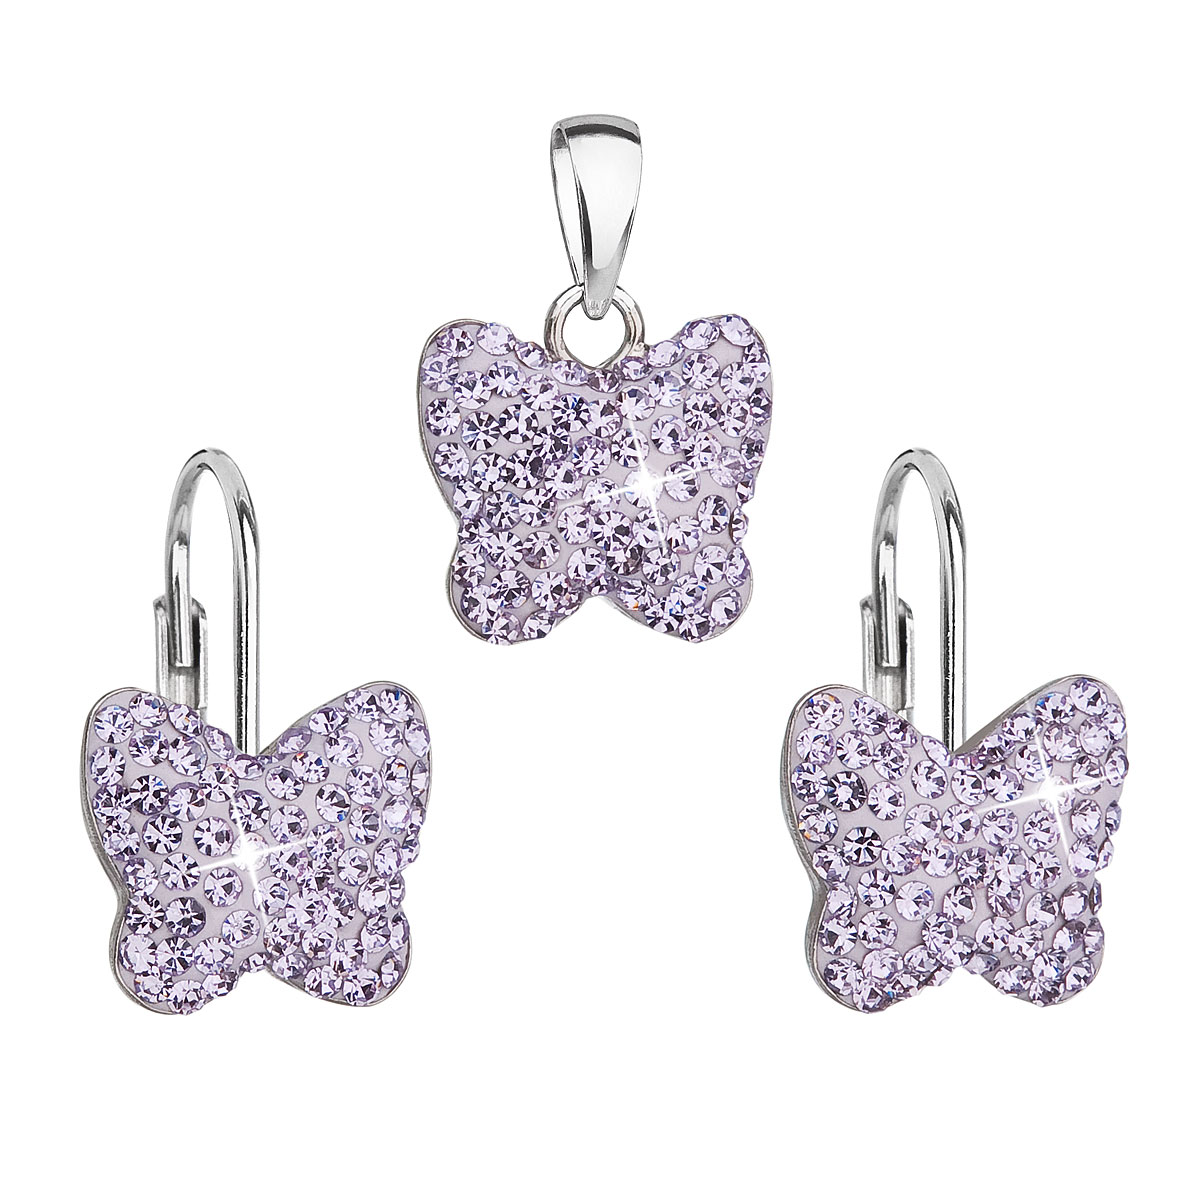 Evolution Group Sada šperků s krystaly Swarovski náušnice a přívěsek fialový motýl 39144.3